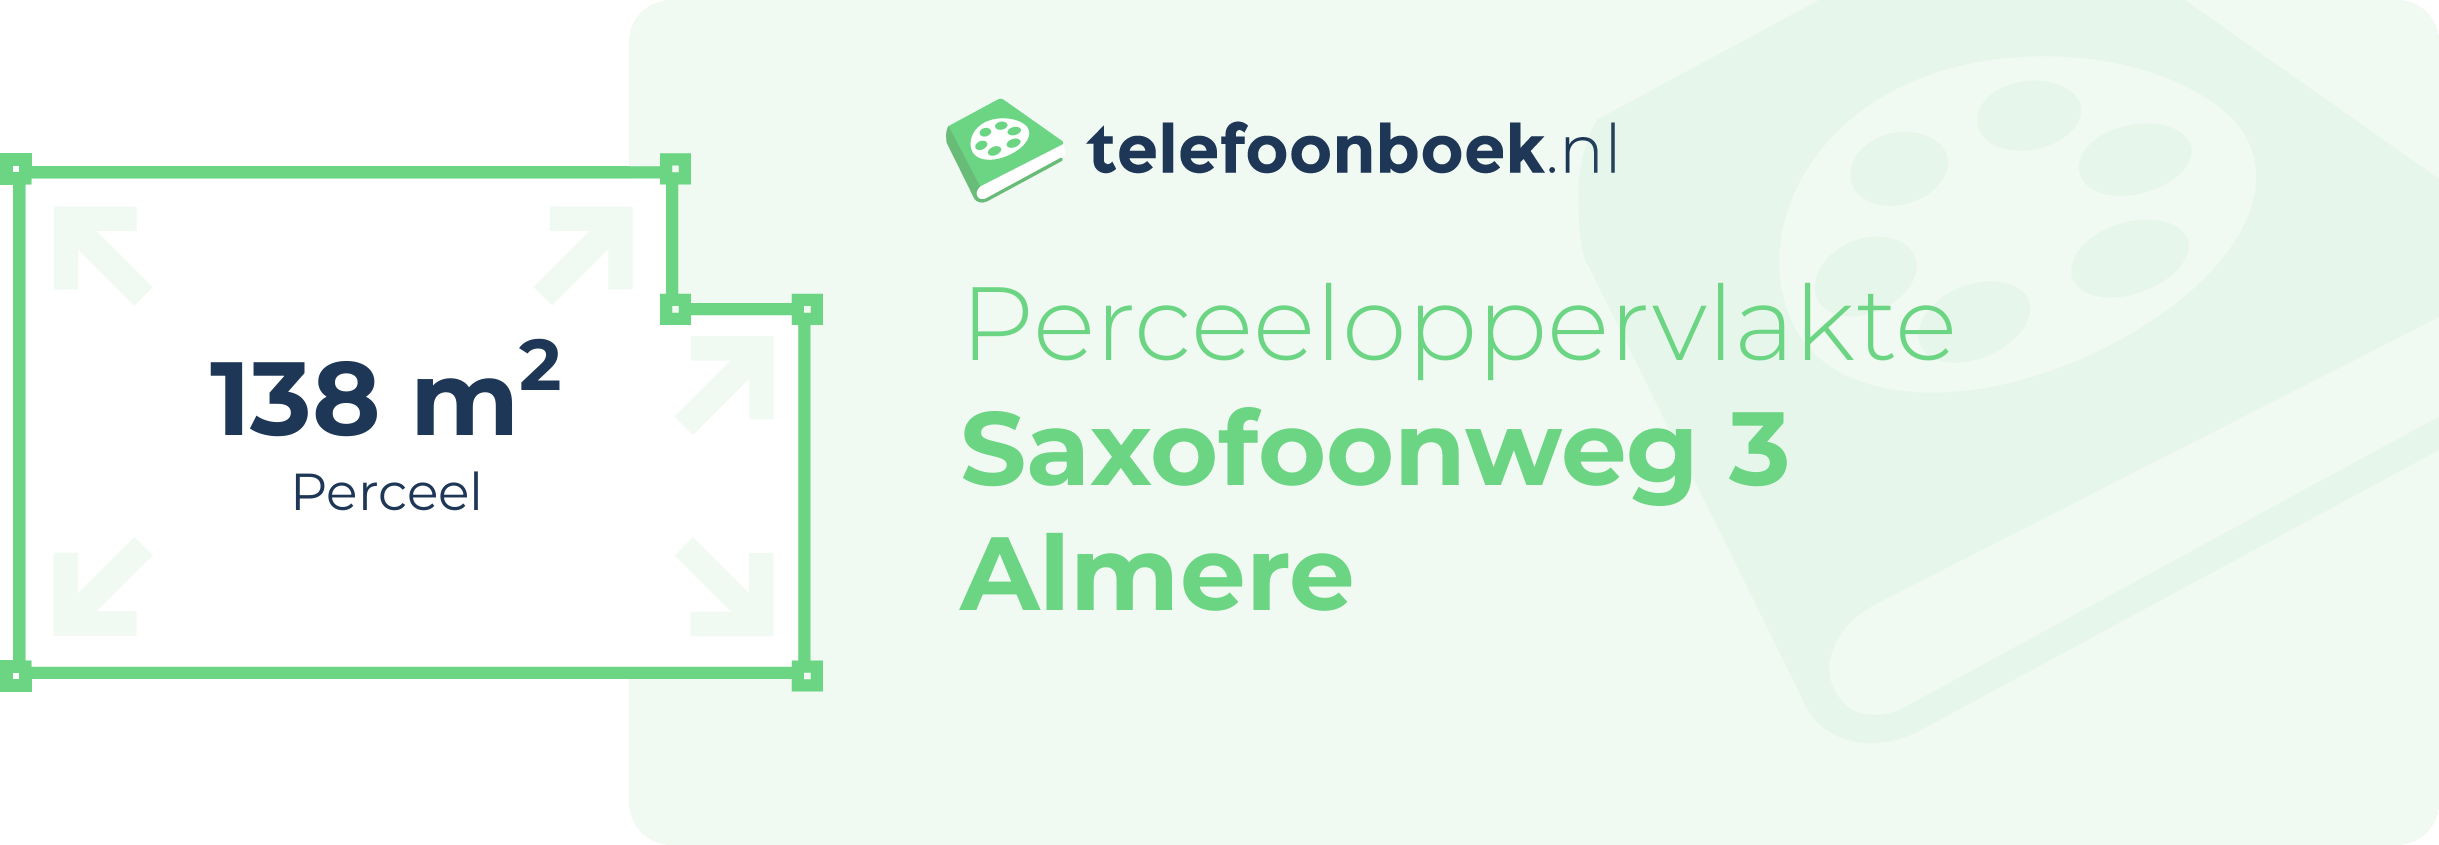 Perceeloppervlakte Saxofoonweg 3 Almere